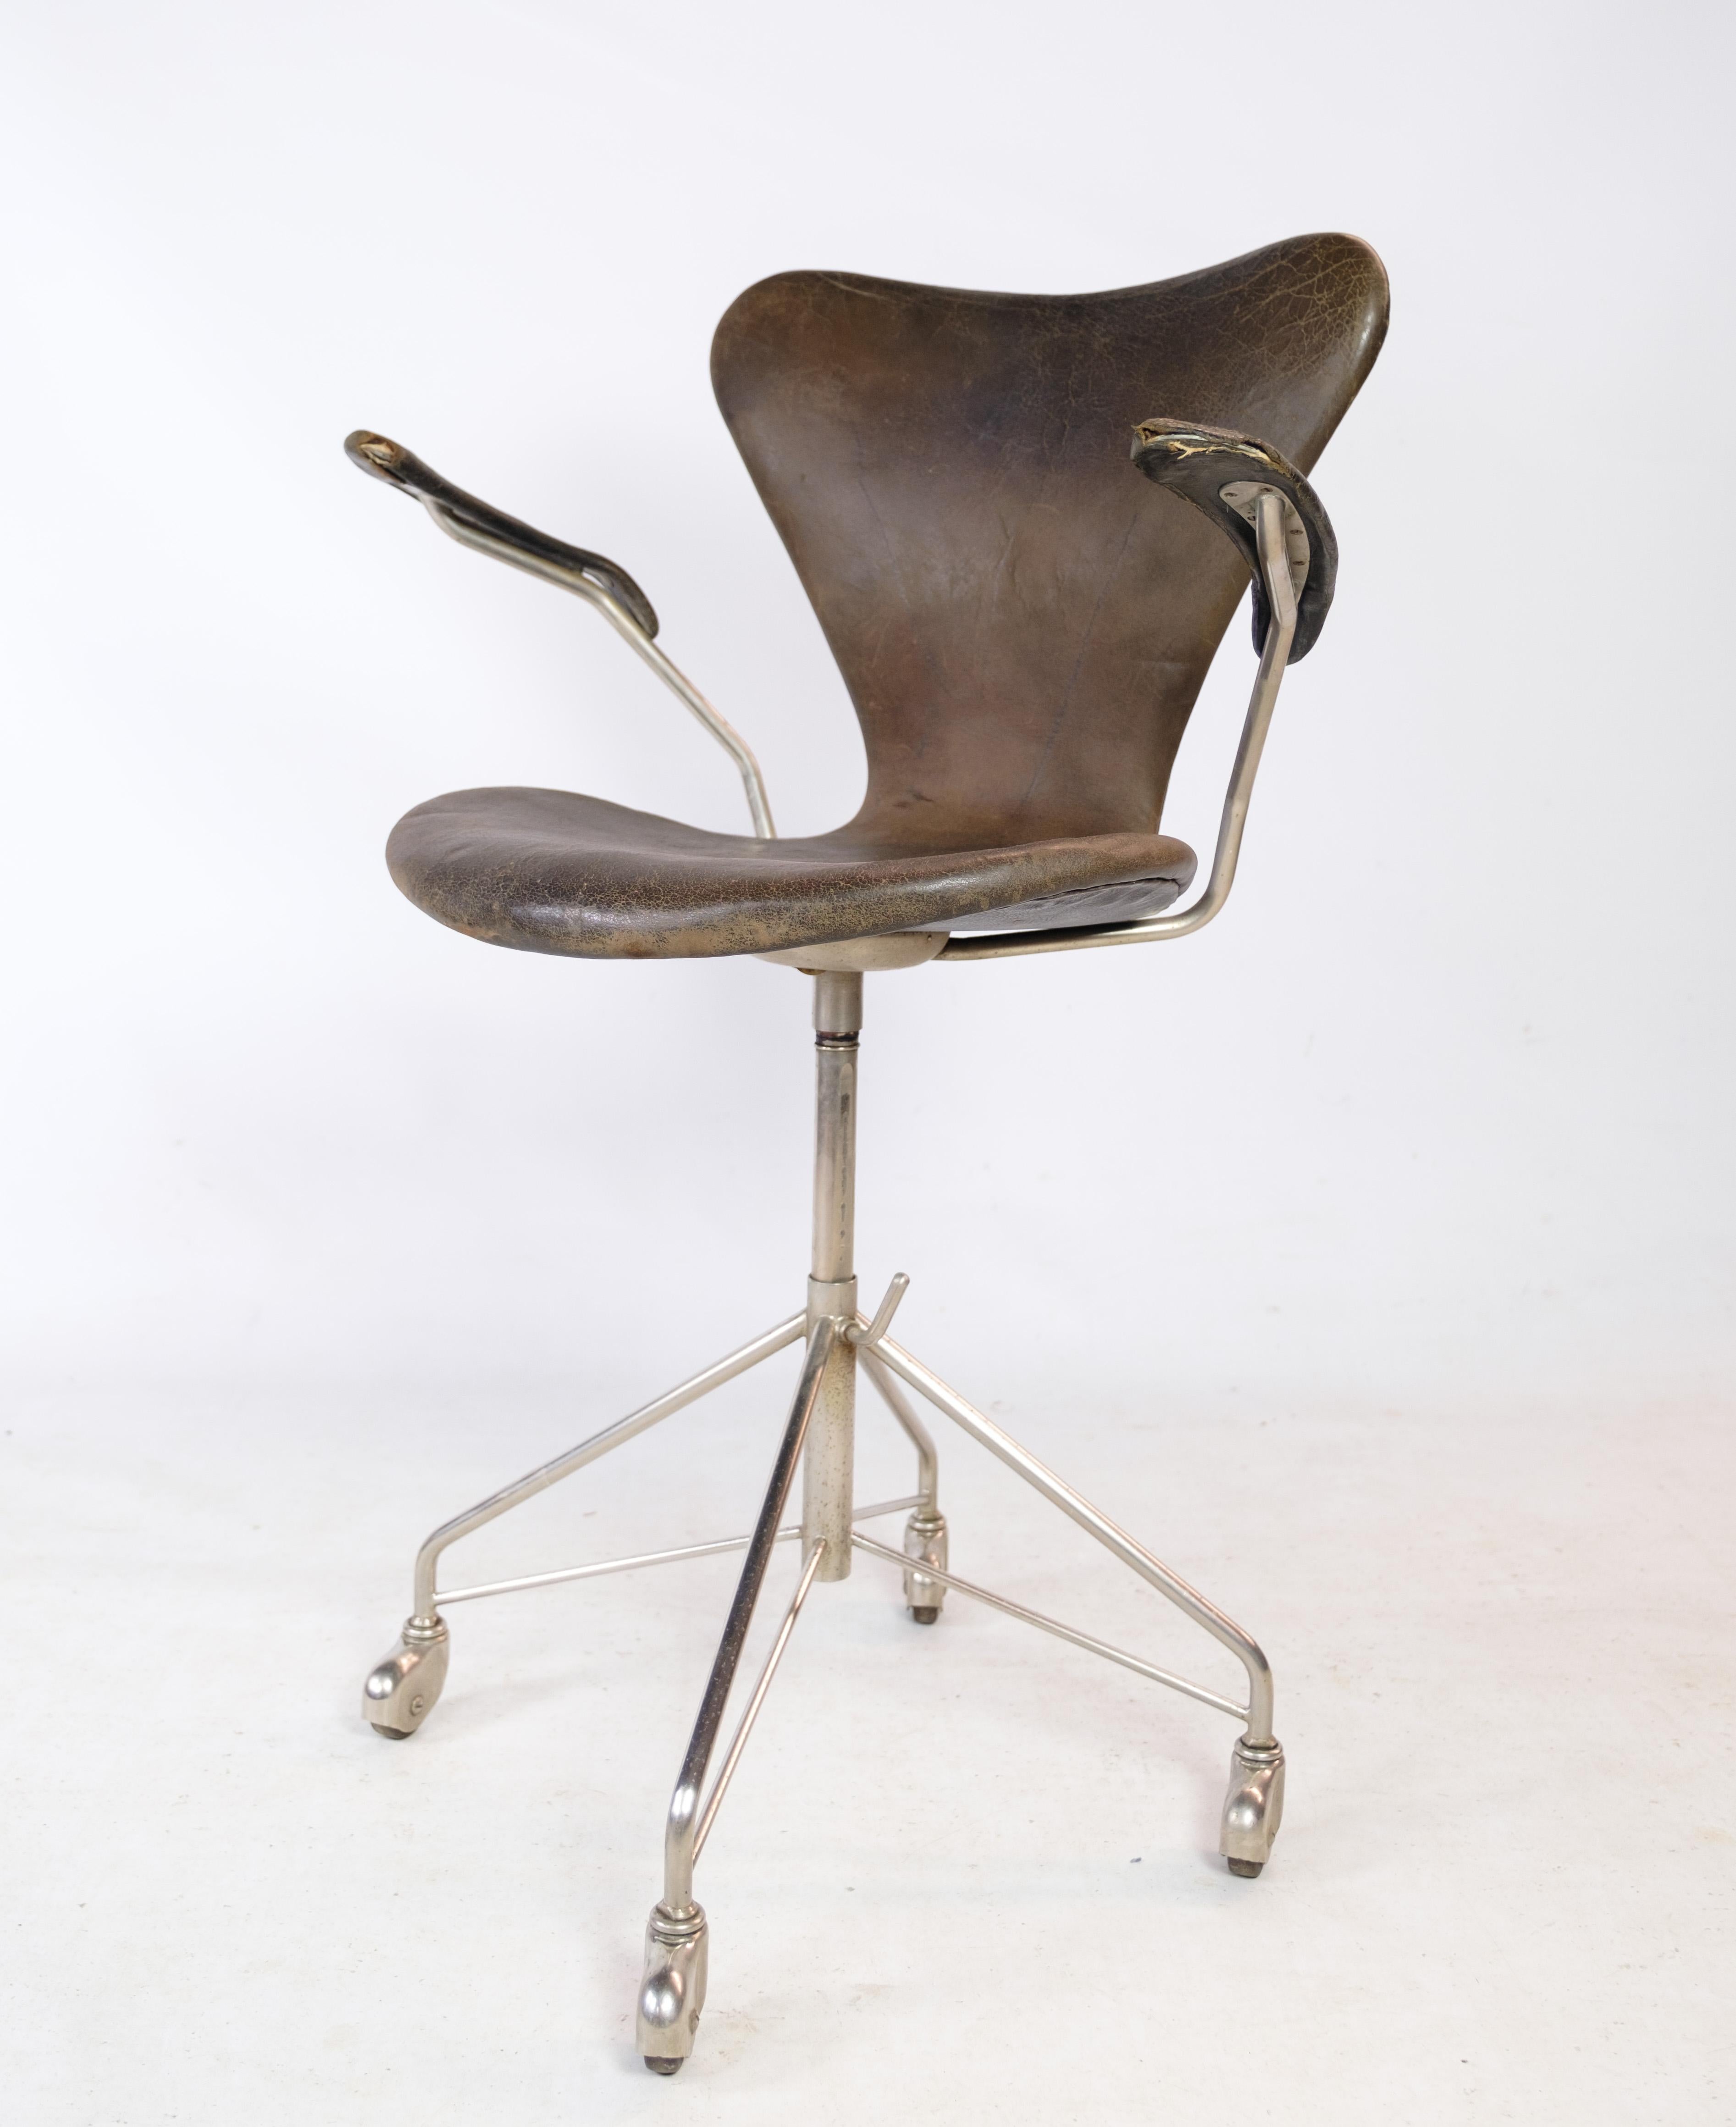 Seven Bürostuhl, Modell 3217, mit Armlehnen und Drehfunktion in original dunkelbraunem Leder, entworfen von Arne Jacobsen in den 1950er Jahren und hergestellt von Fritz Hansen. Der Stuhl ist in gebrauchtem Zustand mit Patina und Abnutzung. Kommt mit